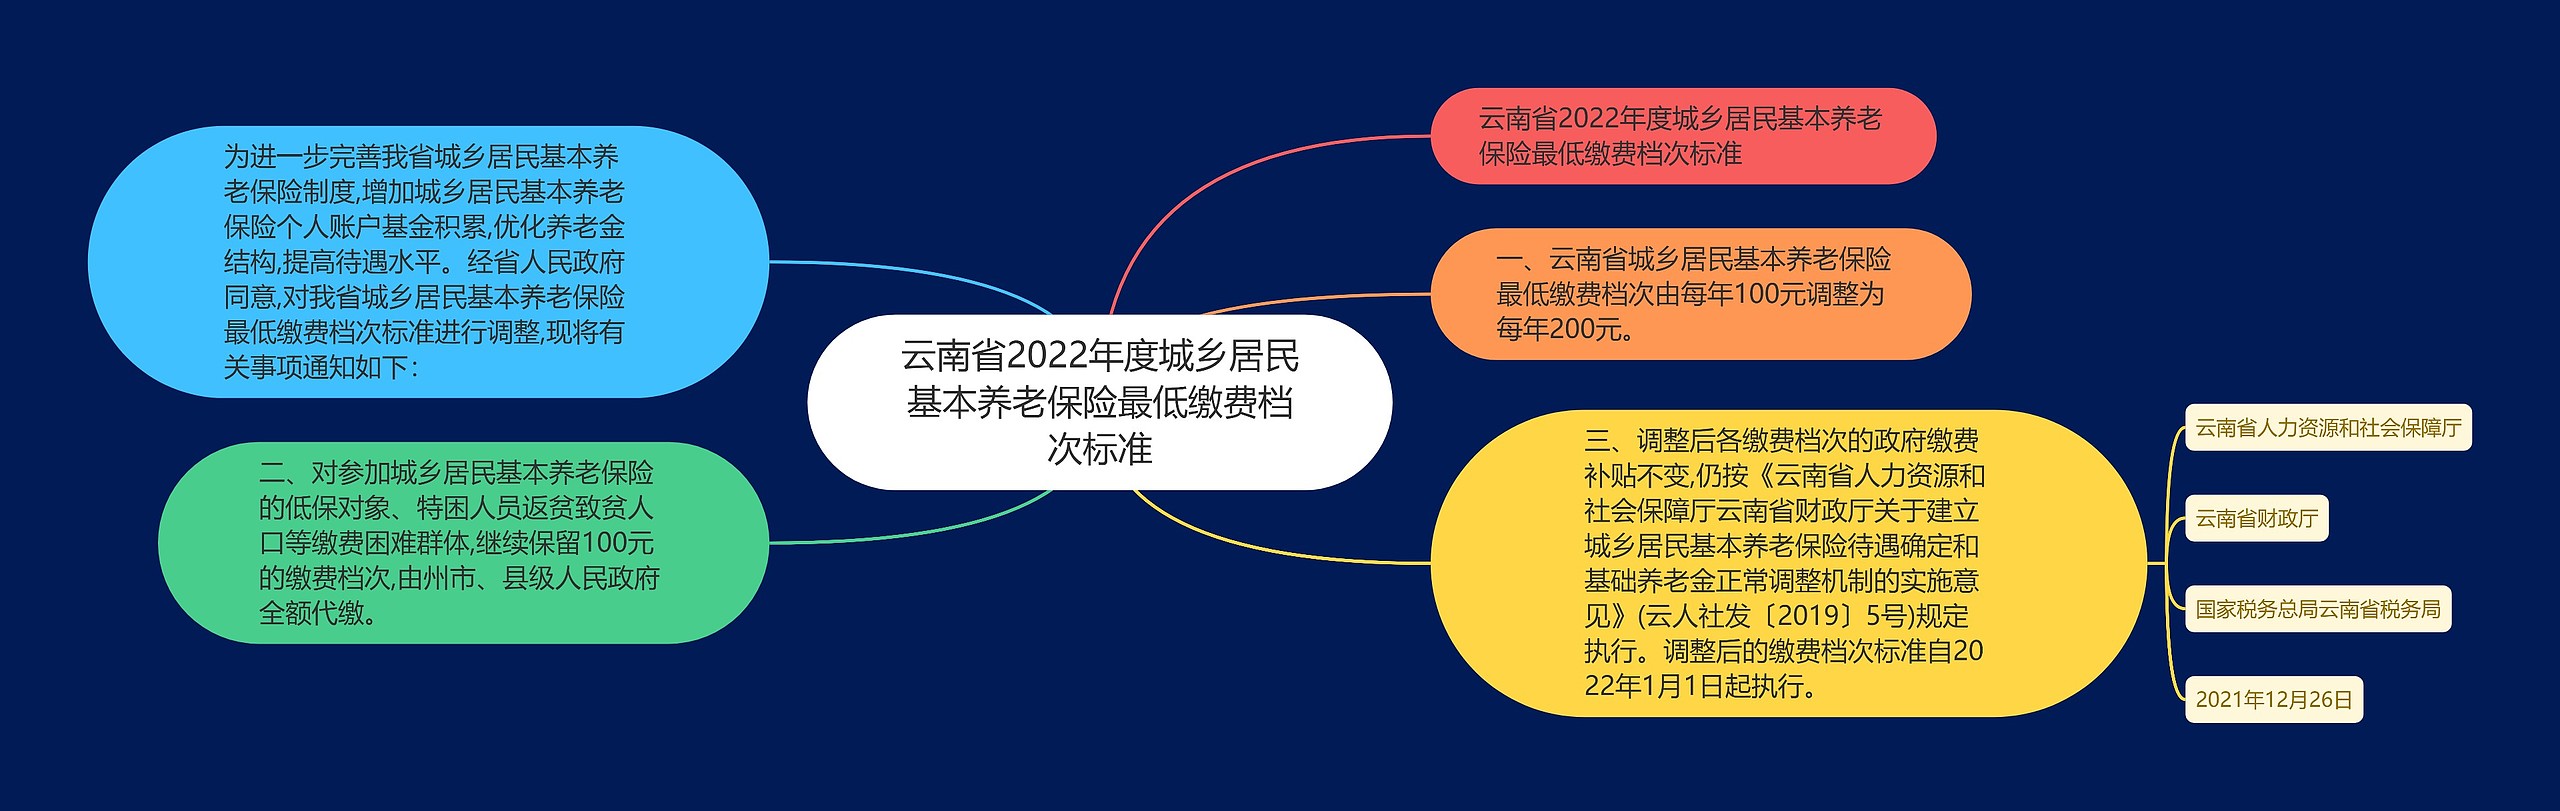 云南省2022年度城乡居民基本养老保险最低缴费档次标准